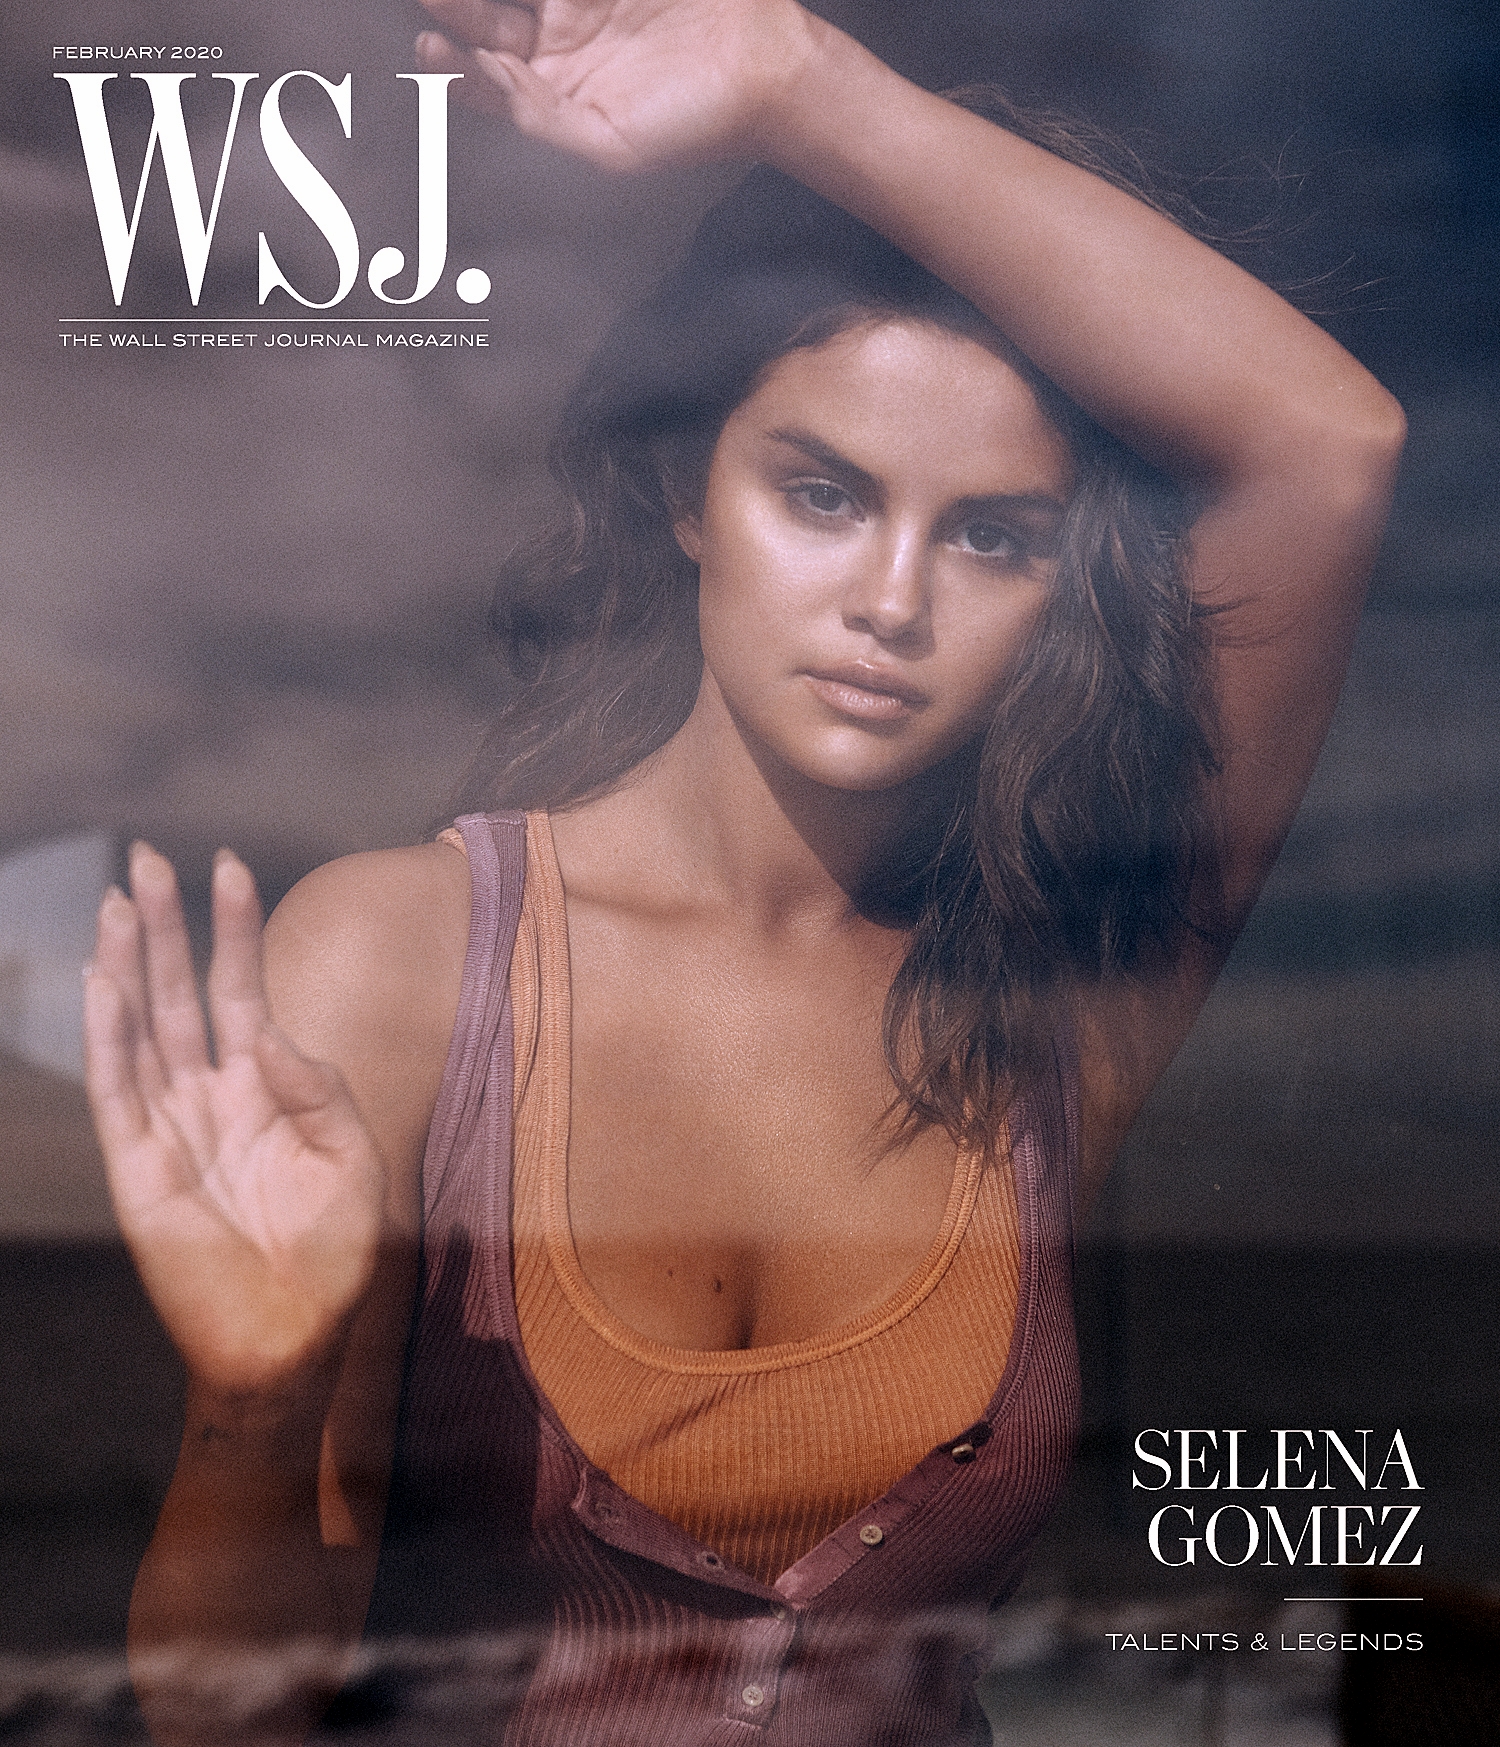 Fotos n°40 : Selena Gomez cierra su sitio web!